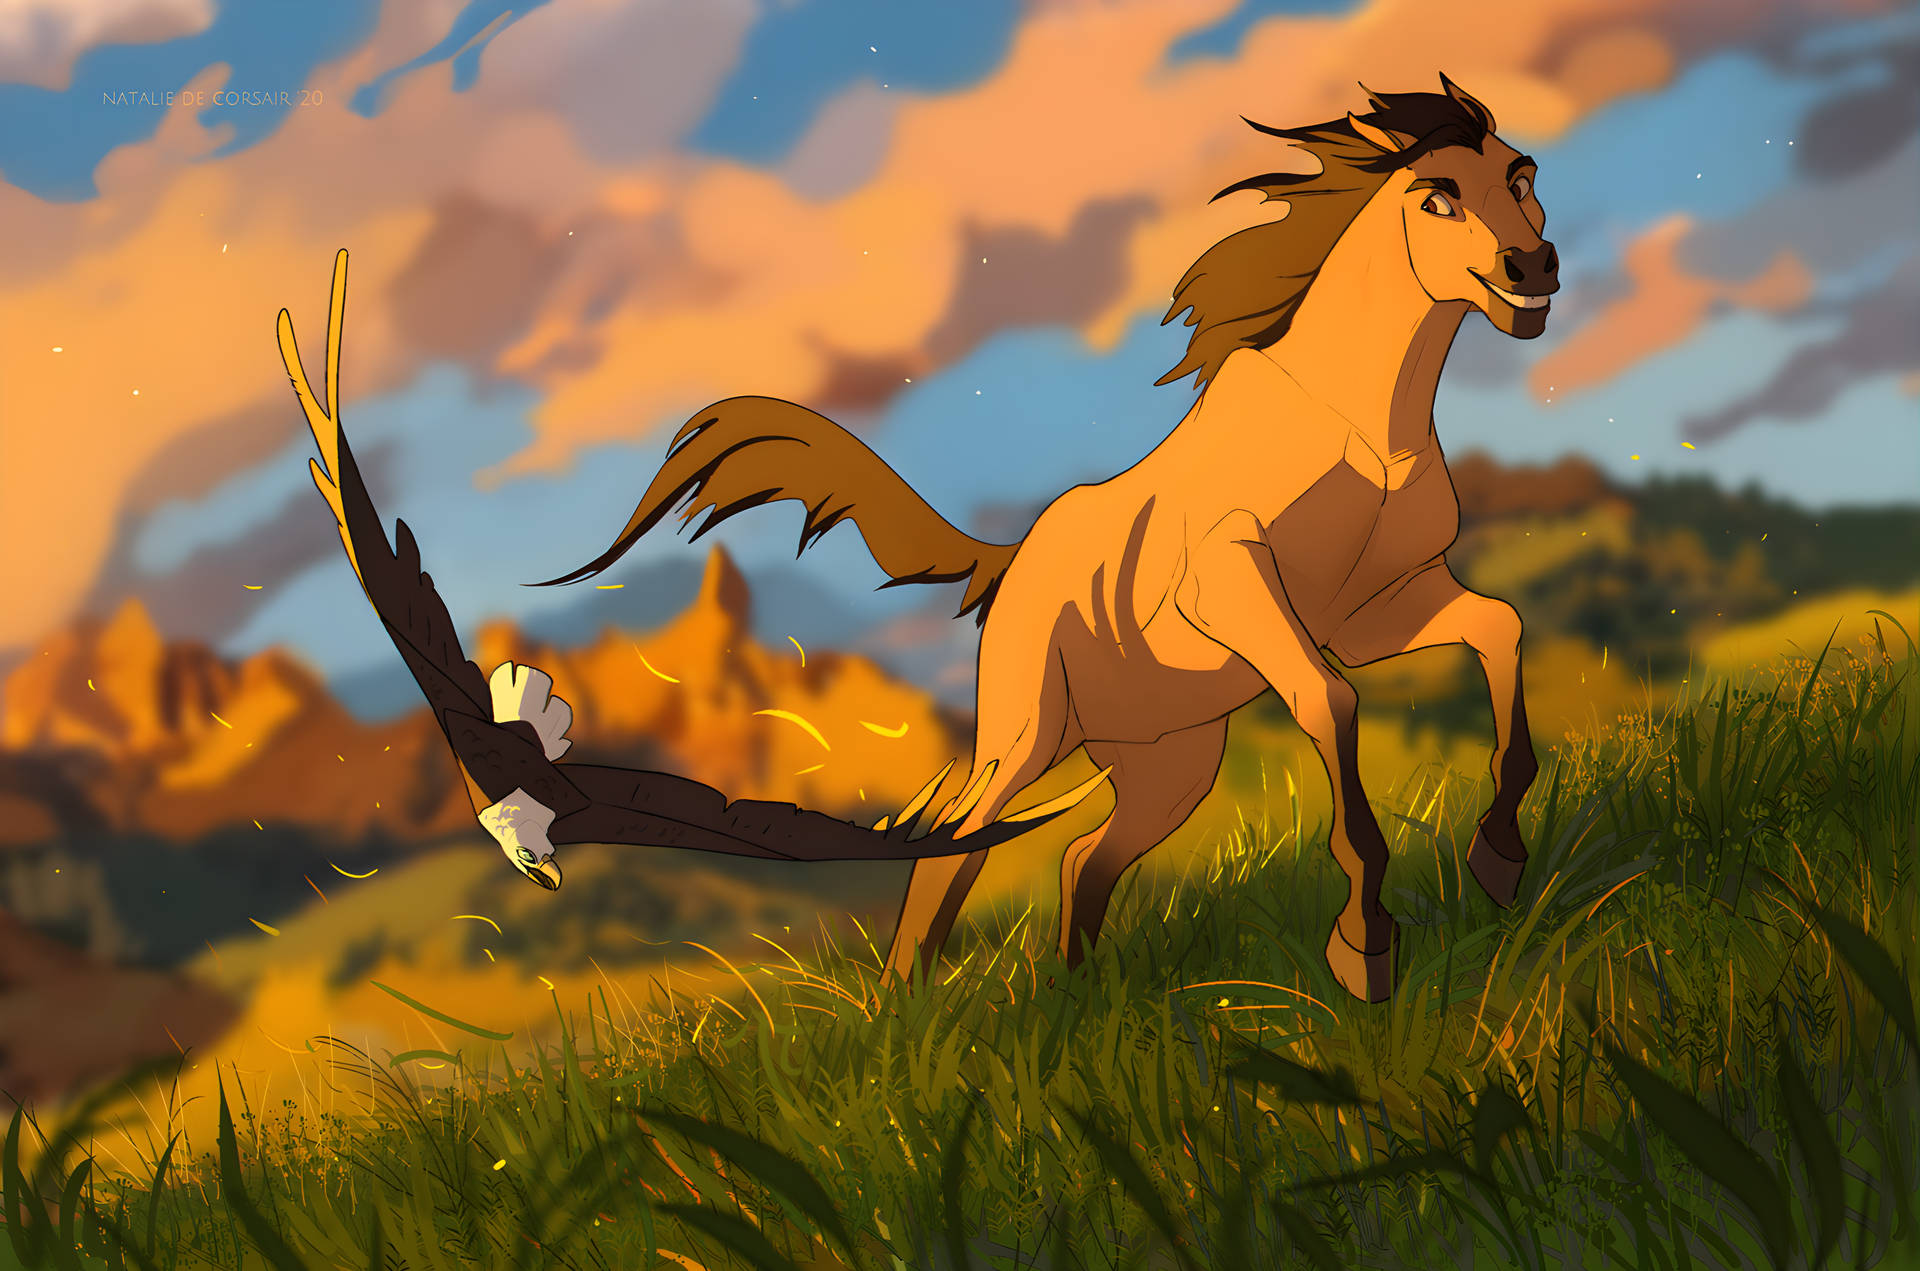 Spirit Stallion af Cimarron Galop gennem solnedgangen Wallpaper